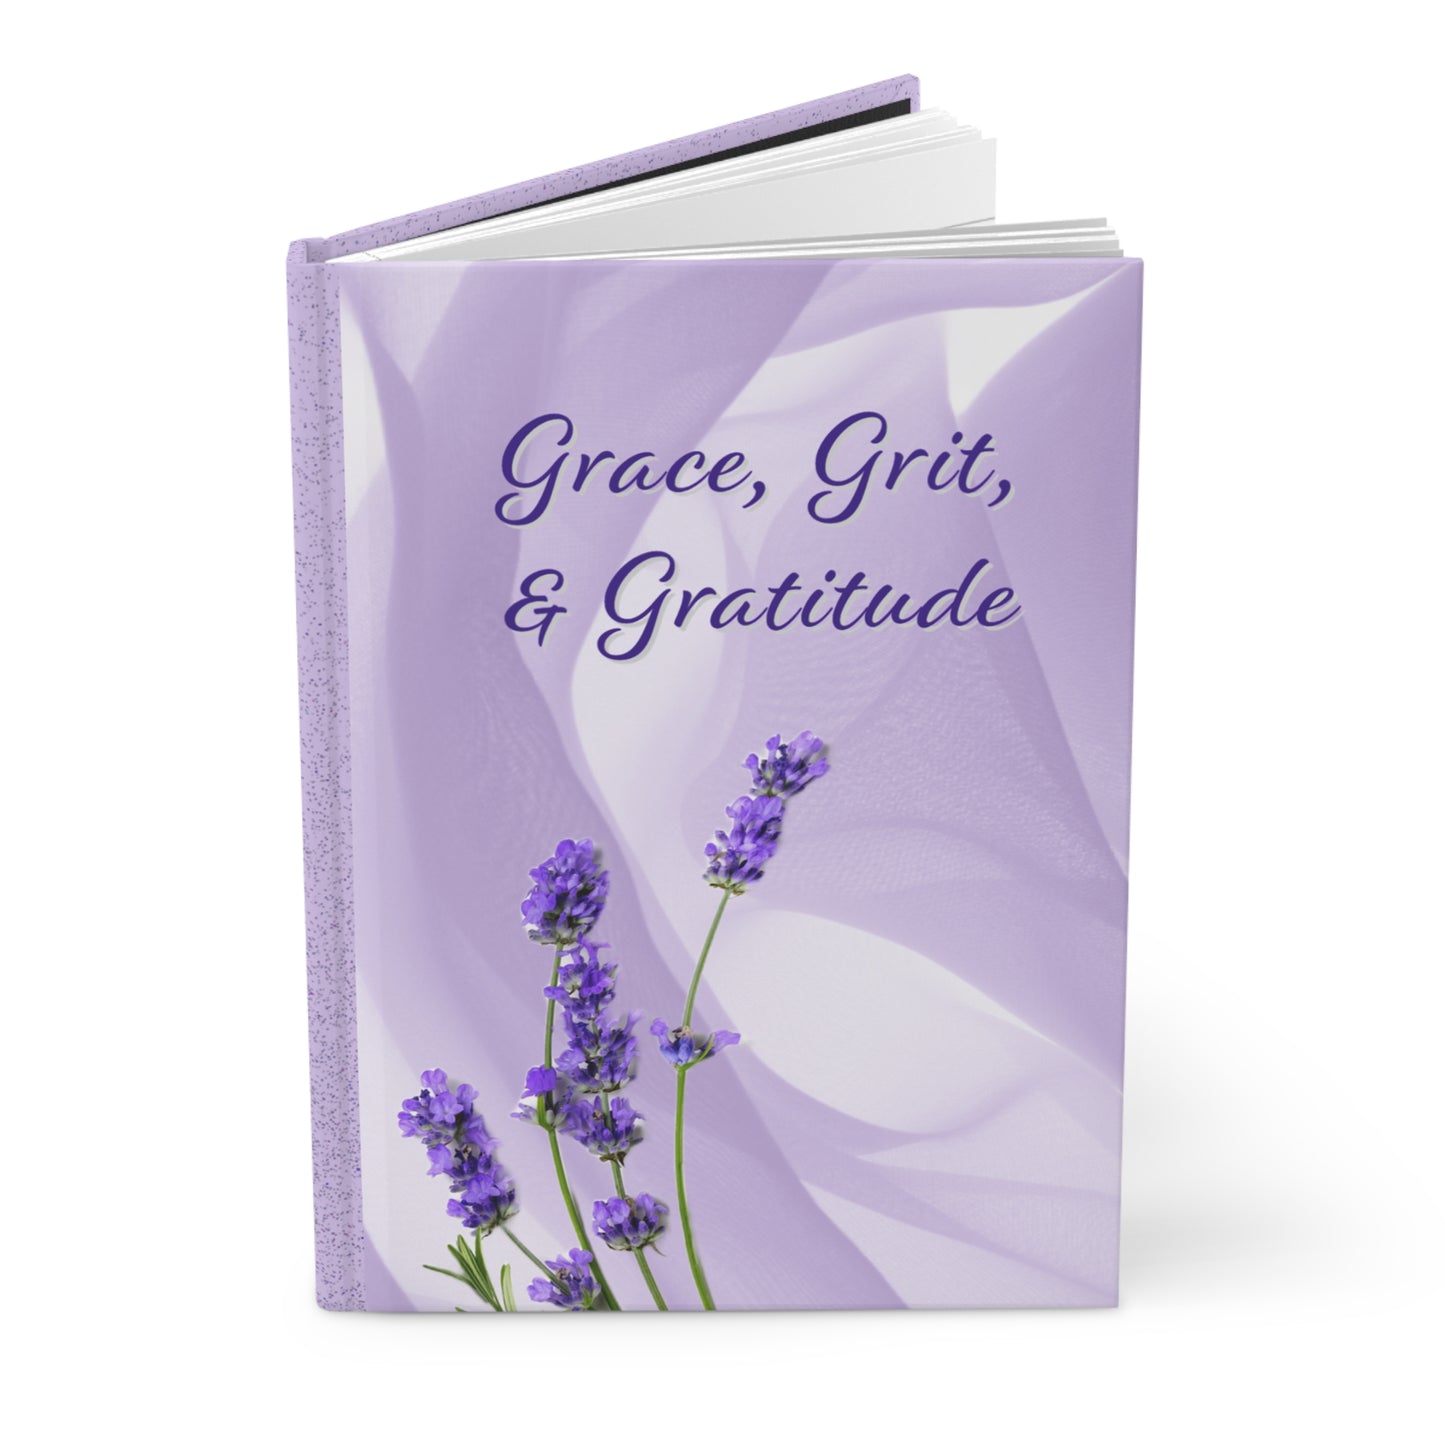 Hardcover Journal - Grace, Grit, & Gratitude